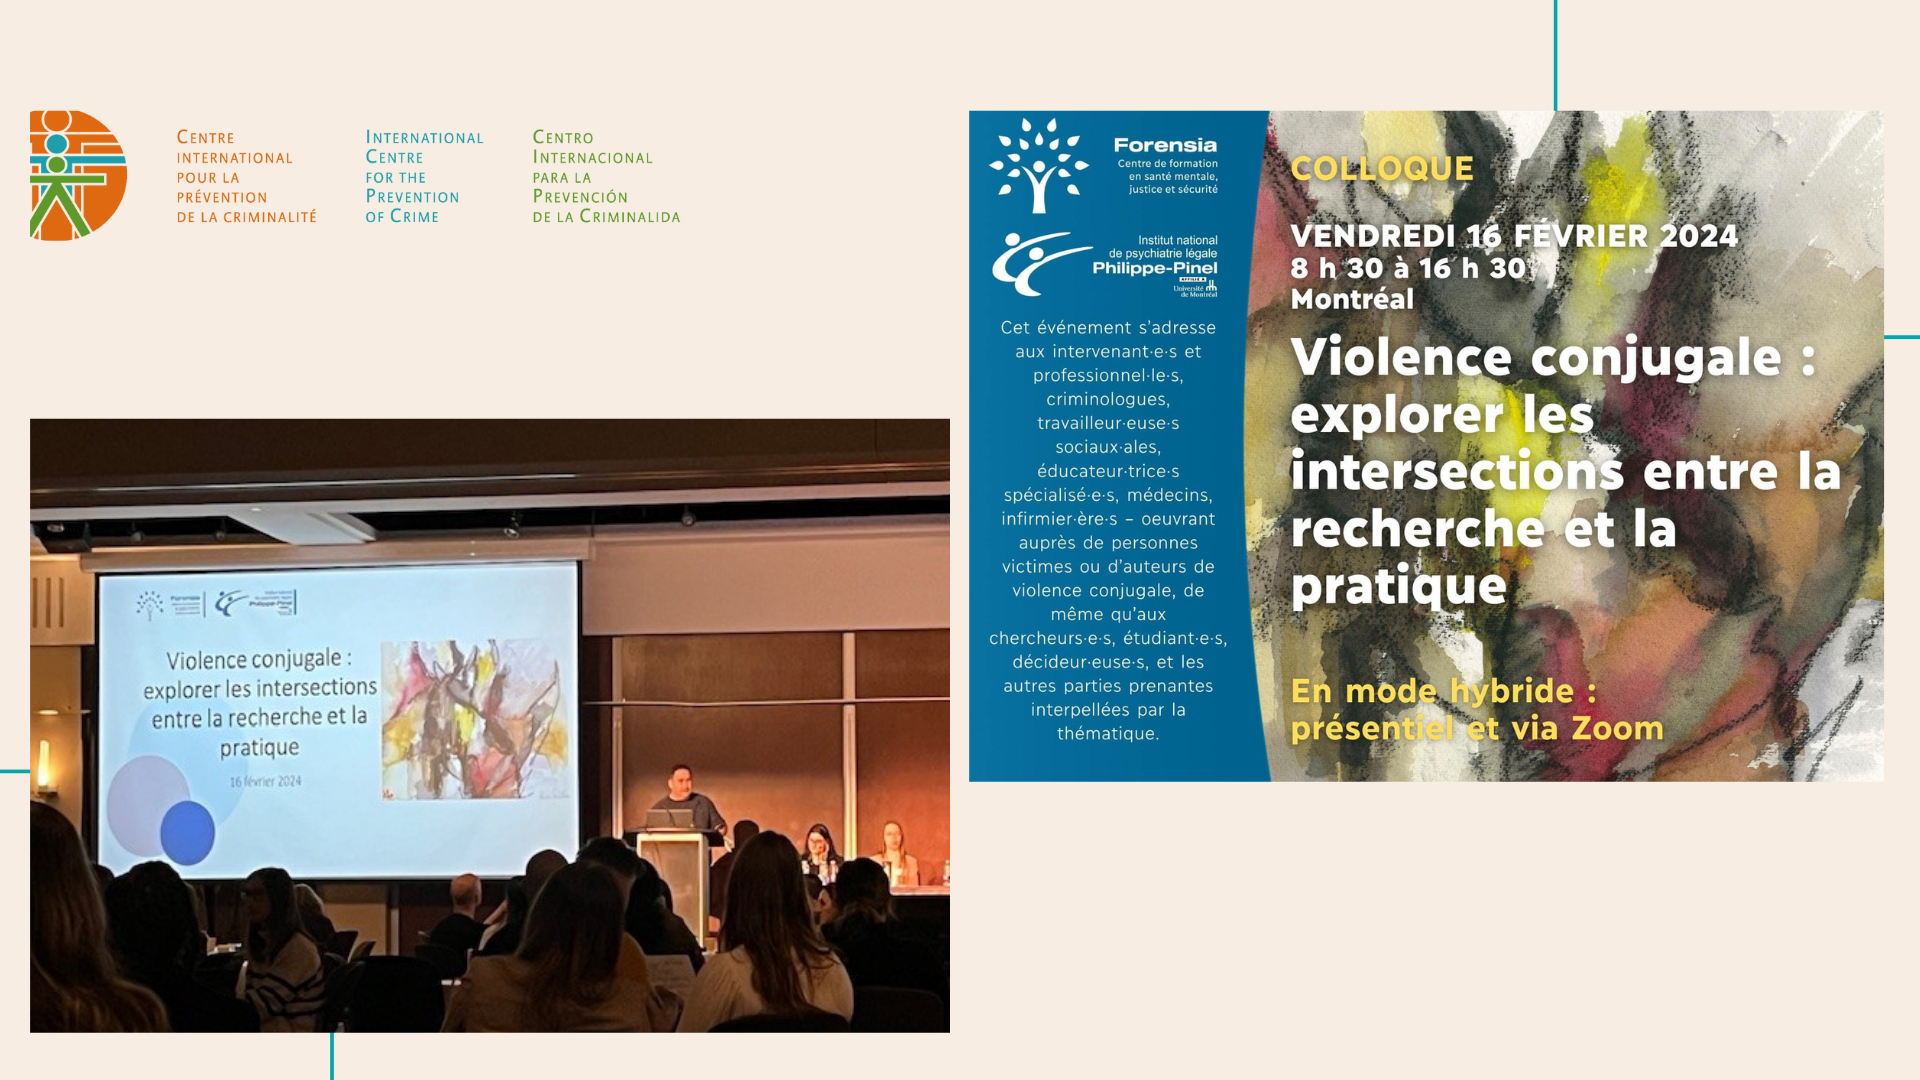 Le CIPC a participé à la 2e édition du colloque Forensia sur la violence conjugale